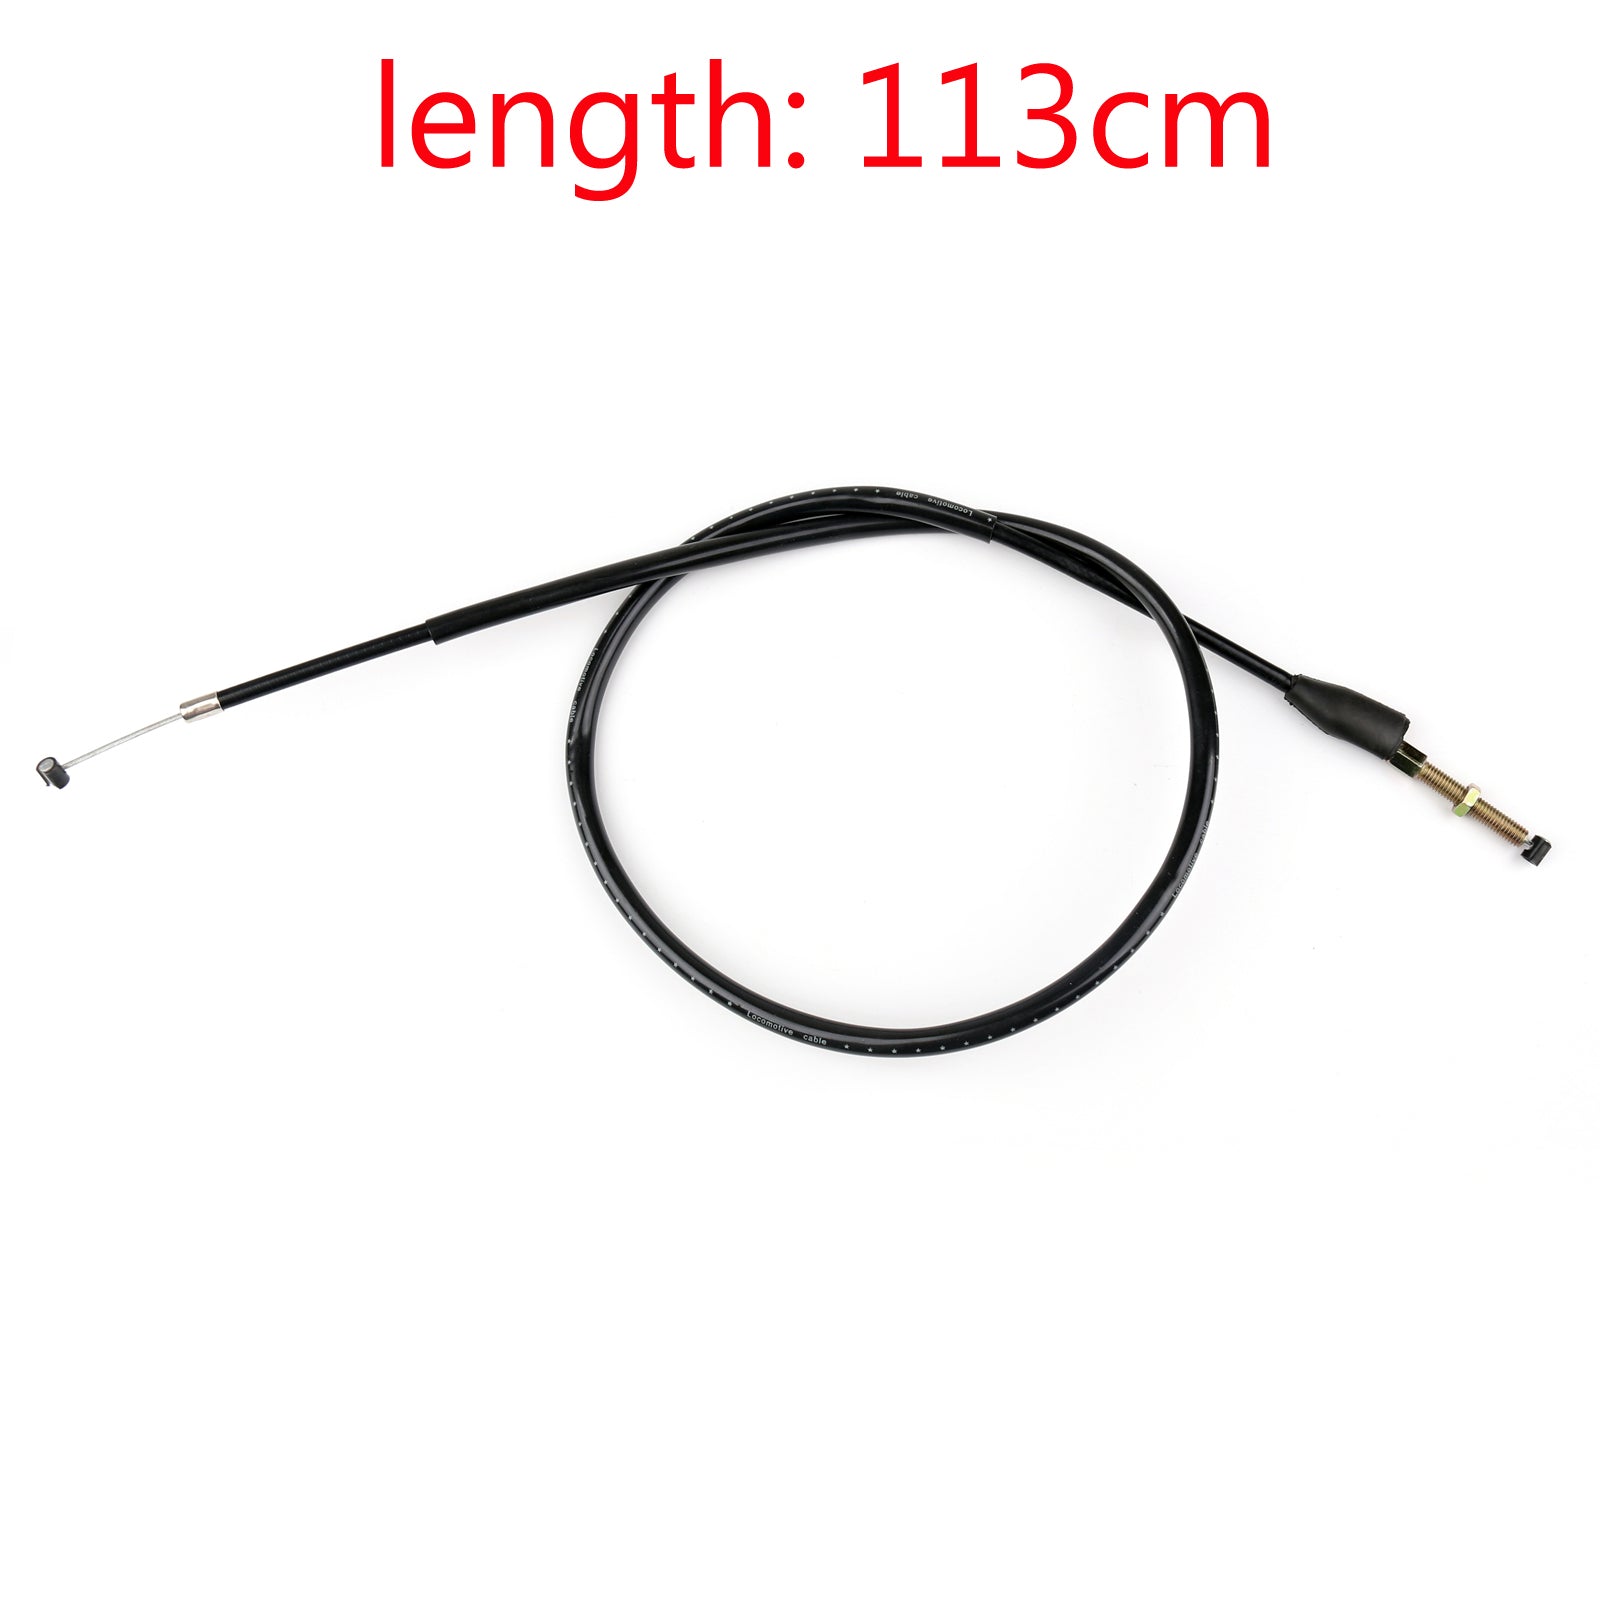 Cable de embrague de alambre de acero 54011-0080 para Suzuki GSXR600 GSXR750 K8 2007-2010 genérico